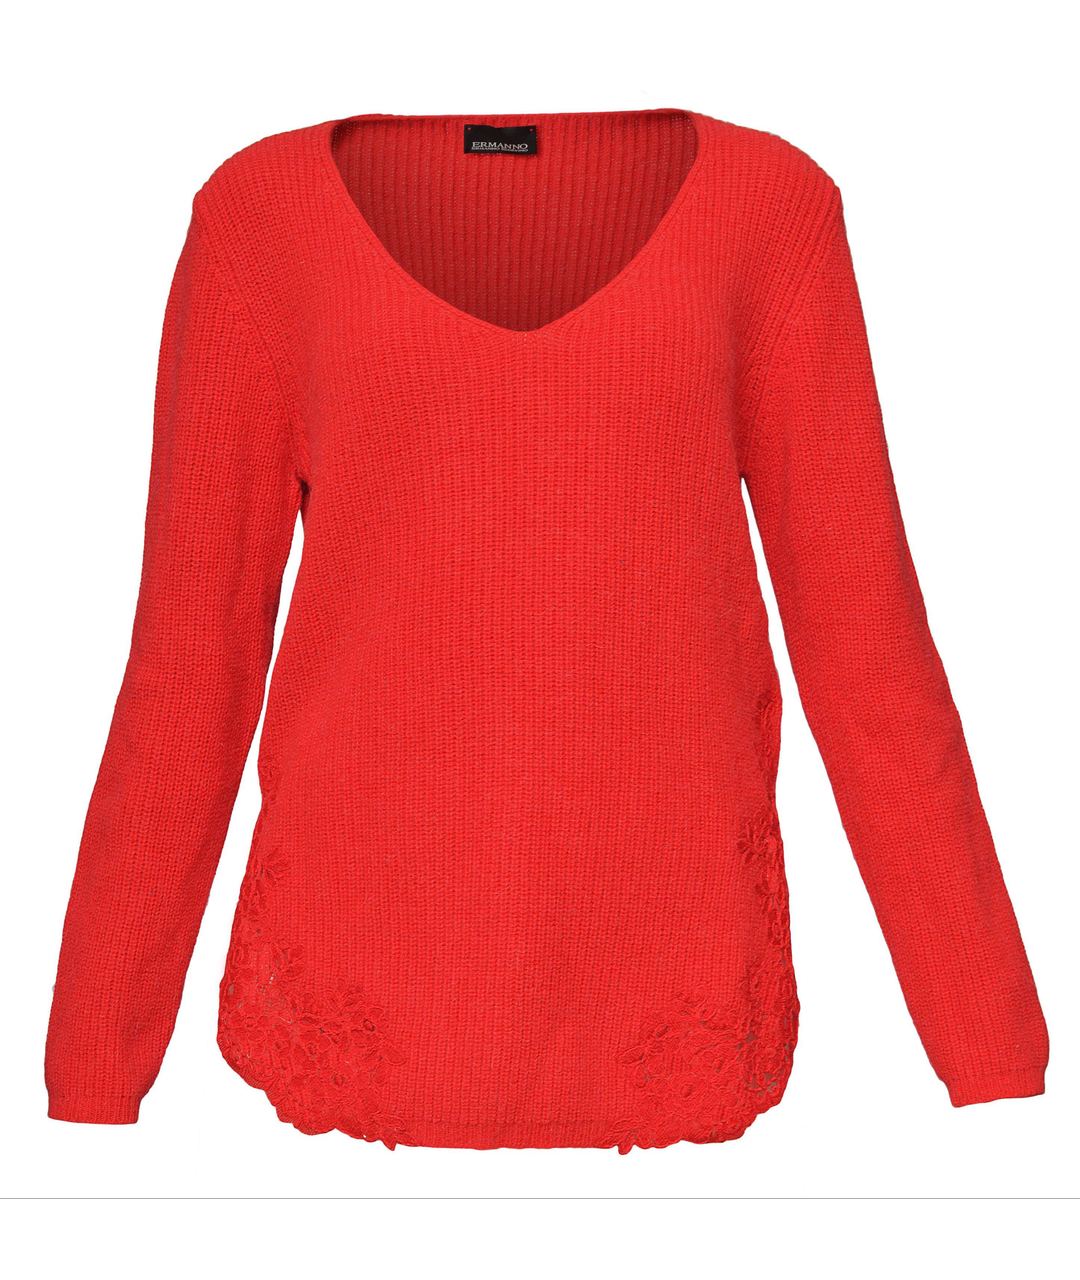 ERMANNO SCERVINO Красный шерстяной джемпер / свитер, фото 1